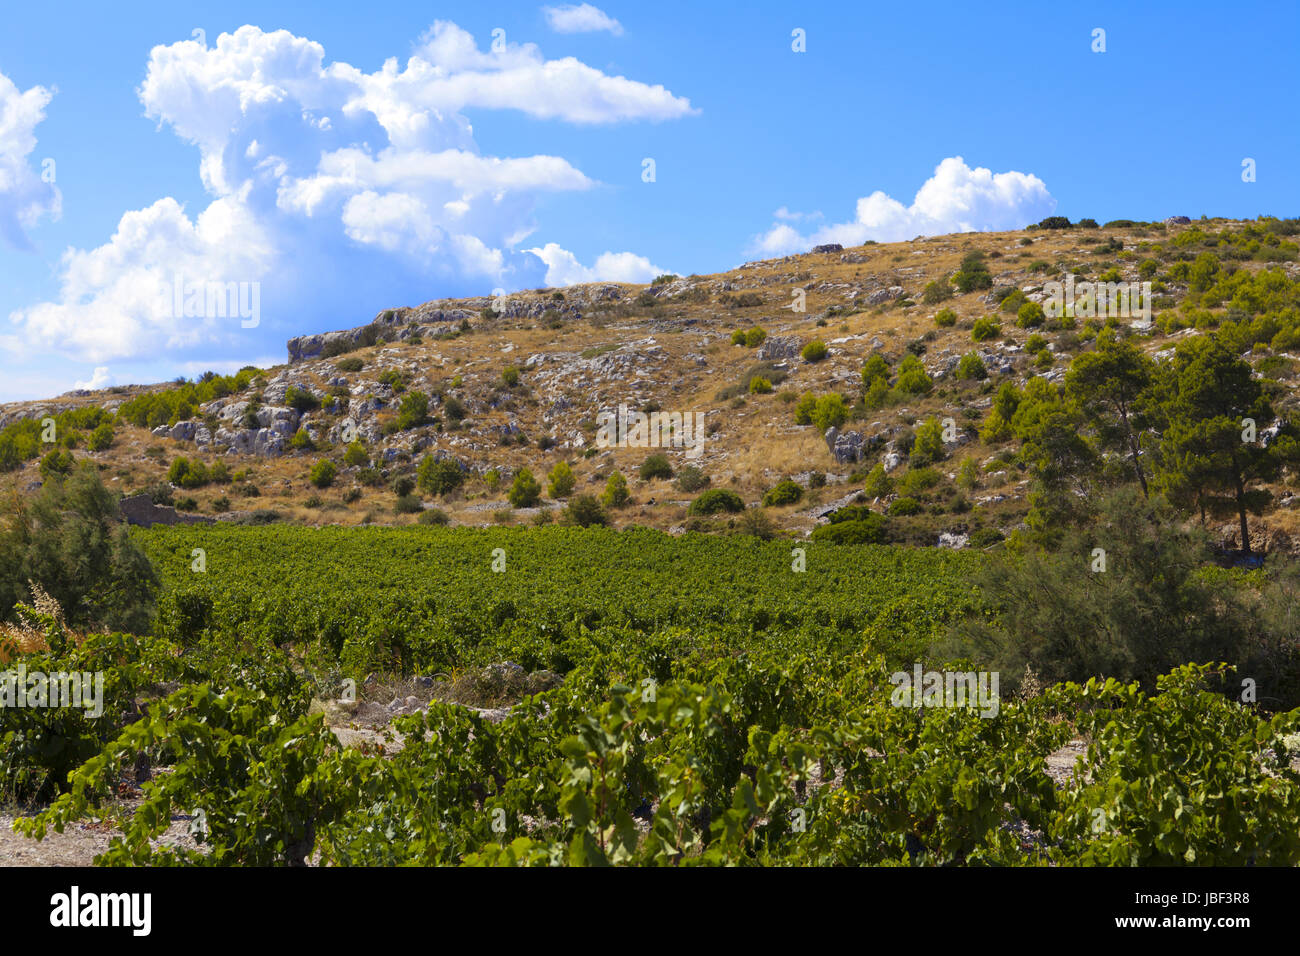 Weinstöcke an steinigen Hügeln in Frankreich Stock Photo